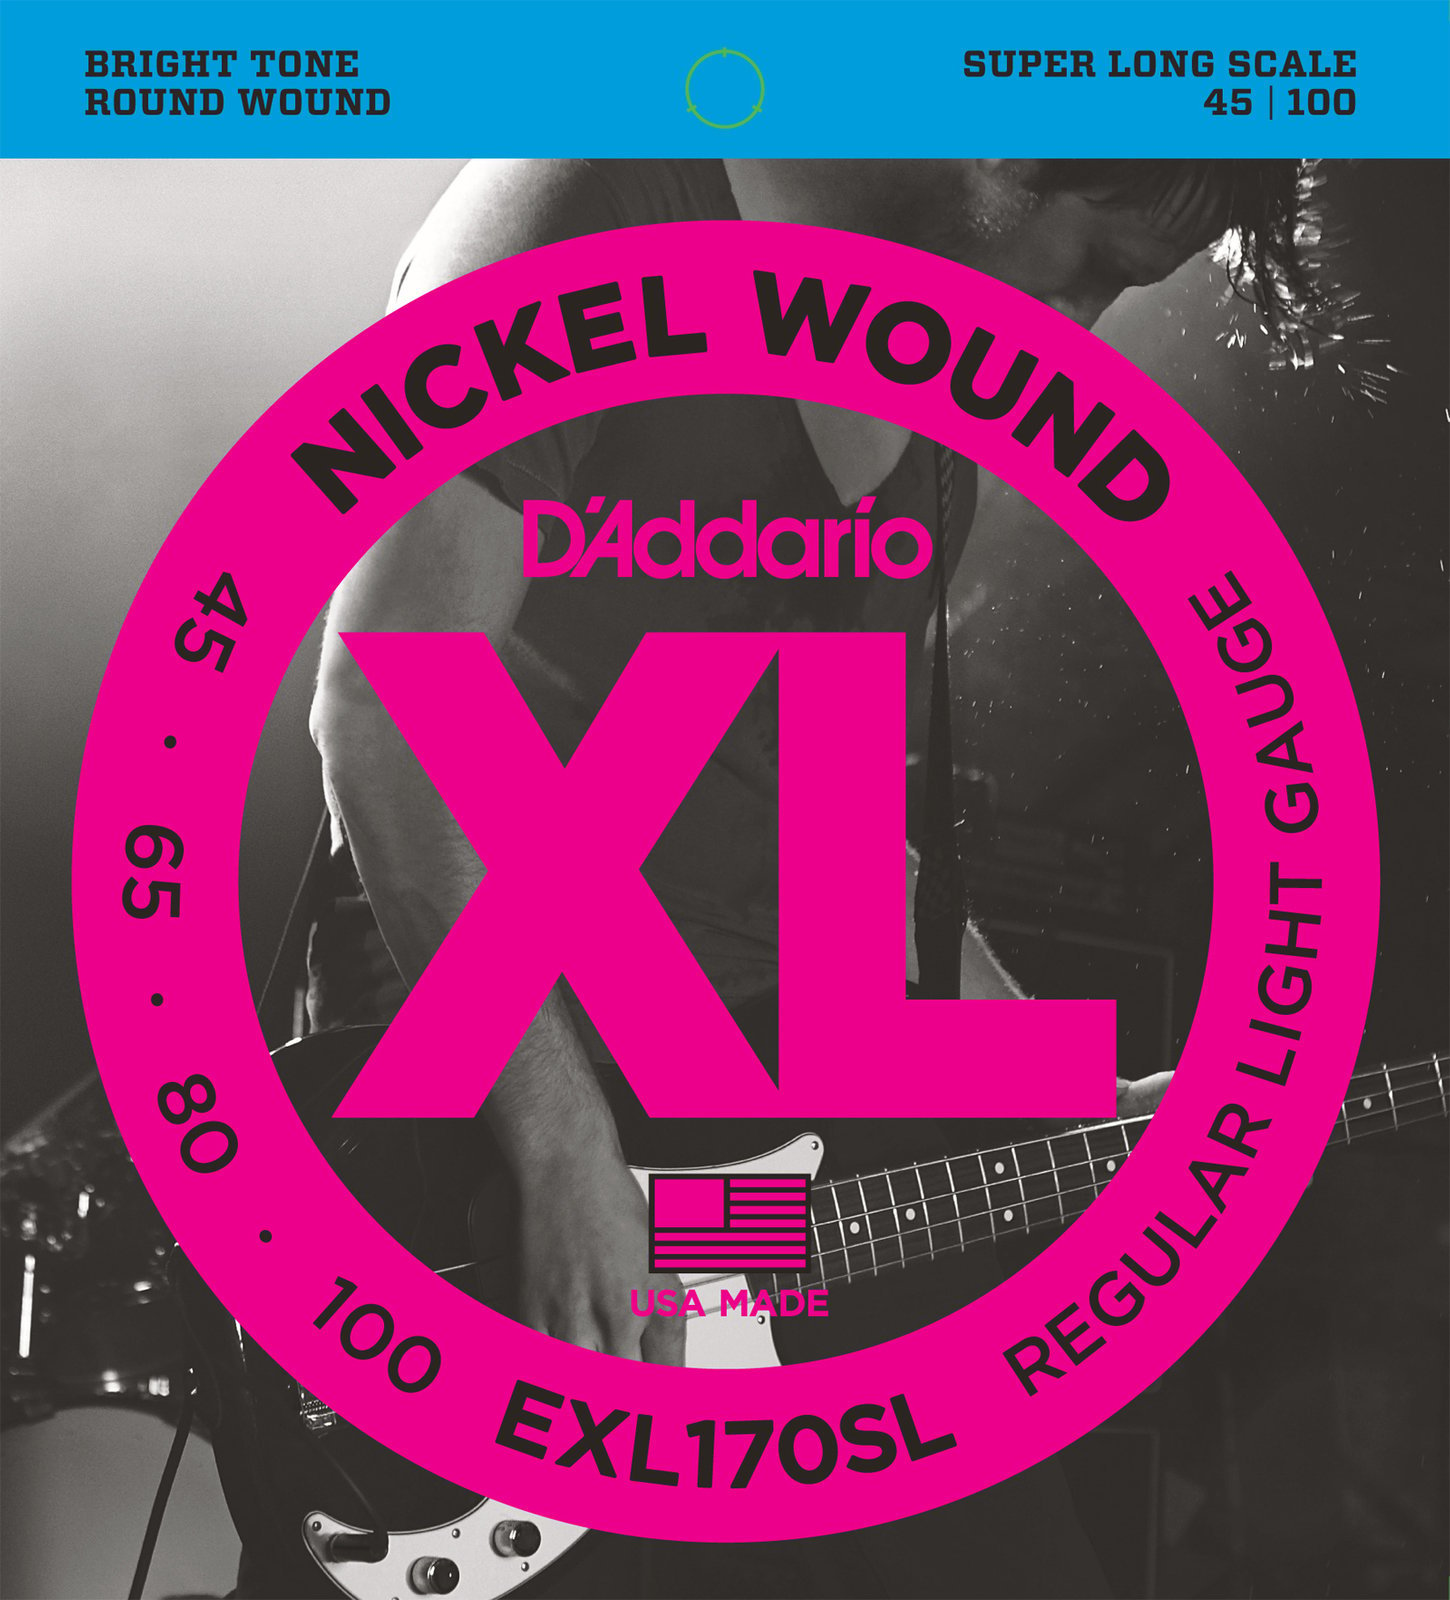 Bassguitar strings D'Addario EXL170SL